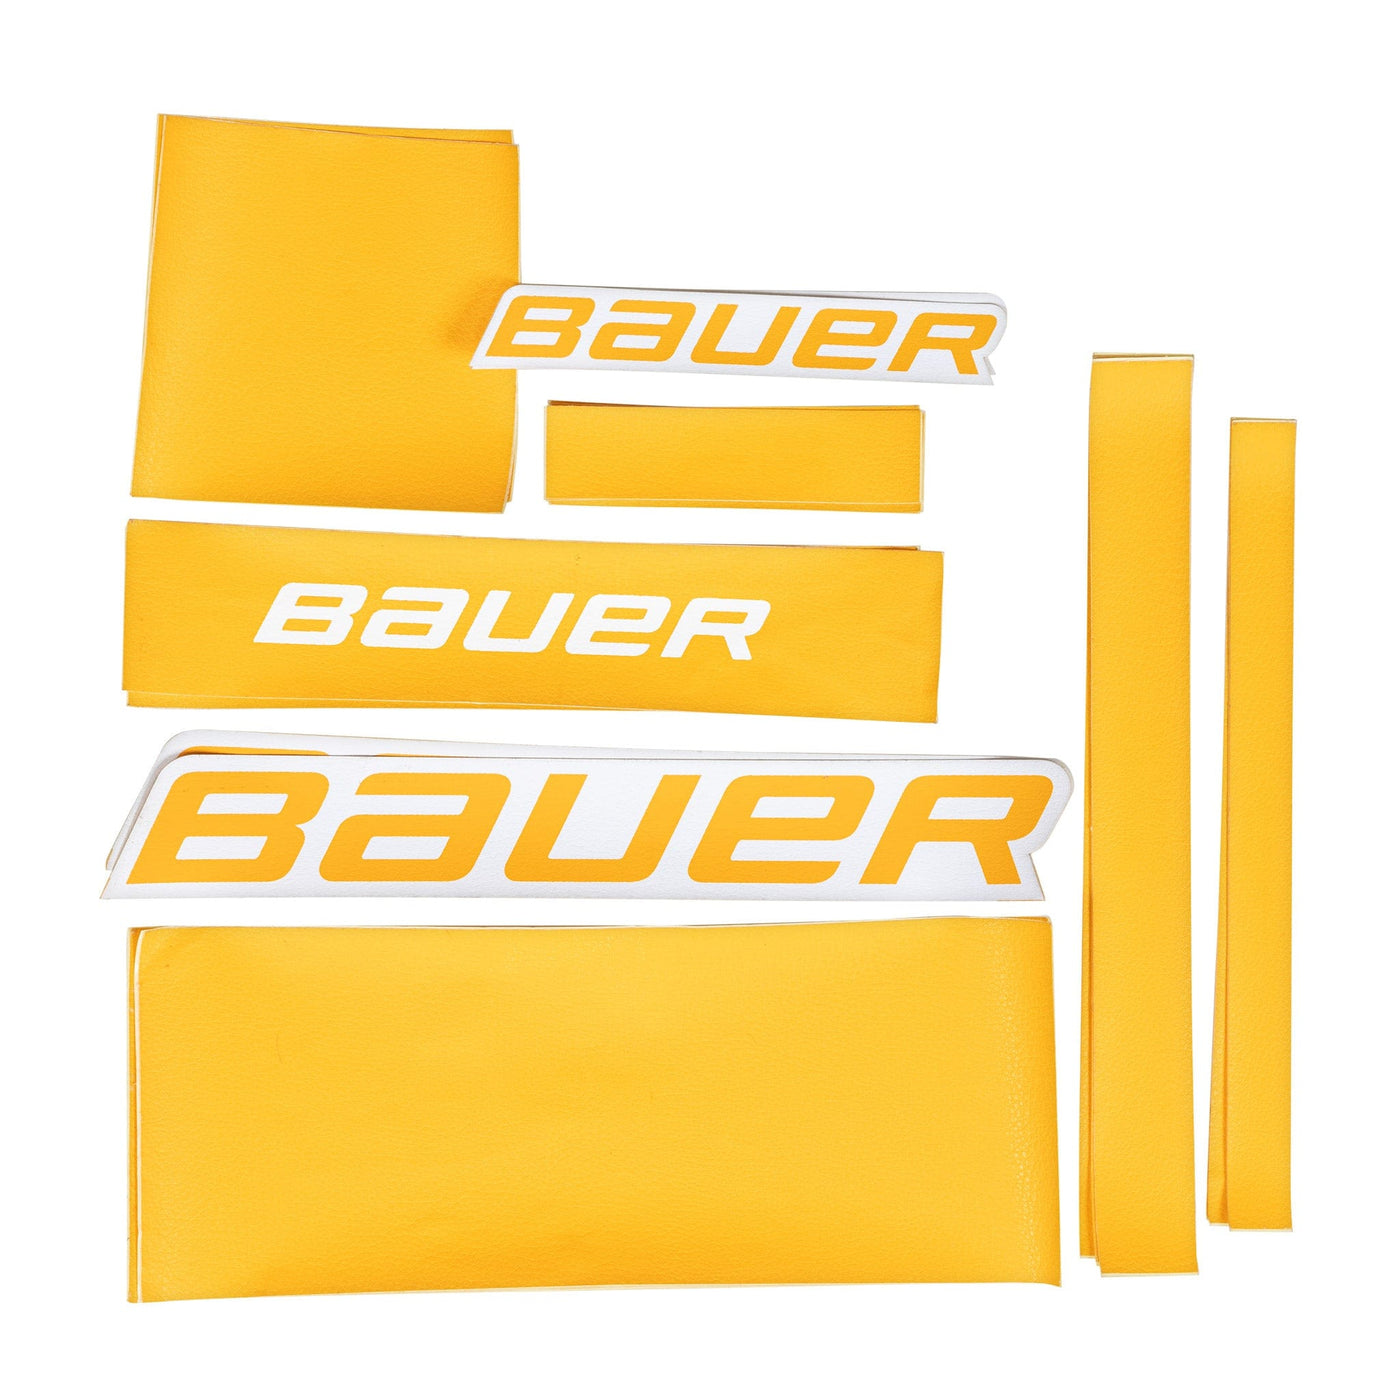 Bauer GSX Graphic Kit